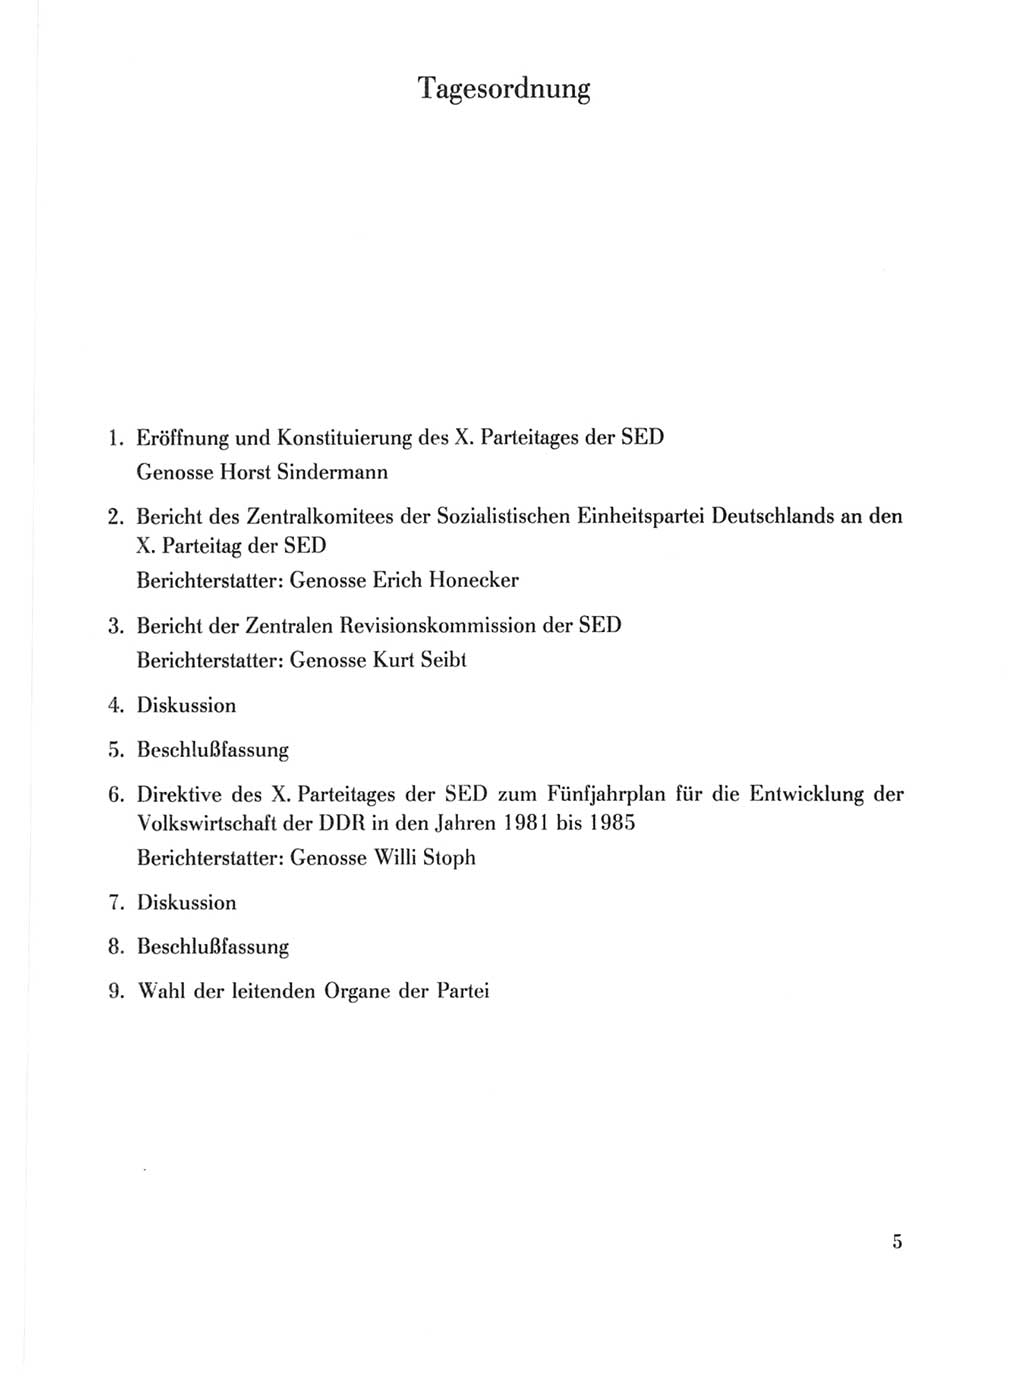 Protokoll der Verhandlungen des Ⅹ. Parteitages der Sozialistischen Einheitspartei Deutschlands (SED) [Deutsche Demokratische Republik (DDR)] 1981, Band 1, Seite 5 (Prot. Verh. Ⅹ. PT SED DDR 1981, Bd. 1, S. 5)